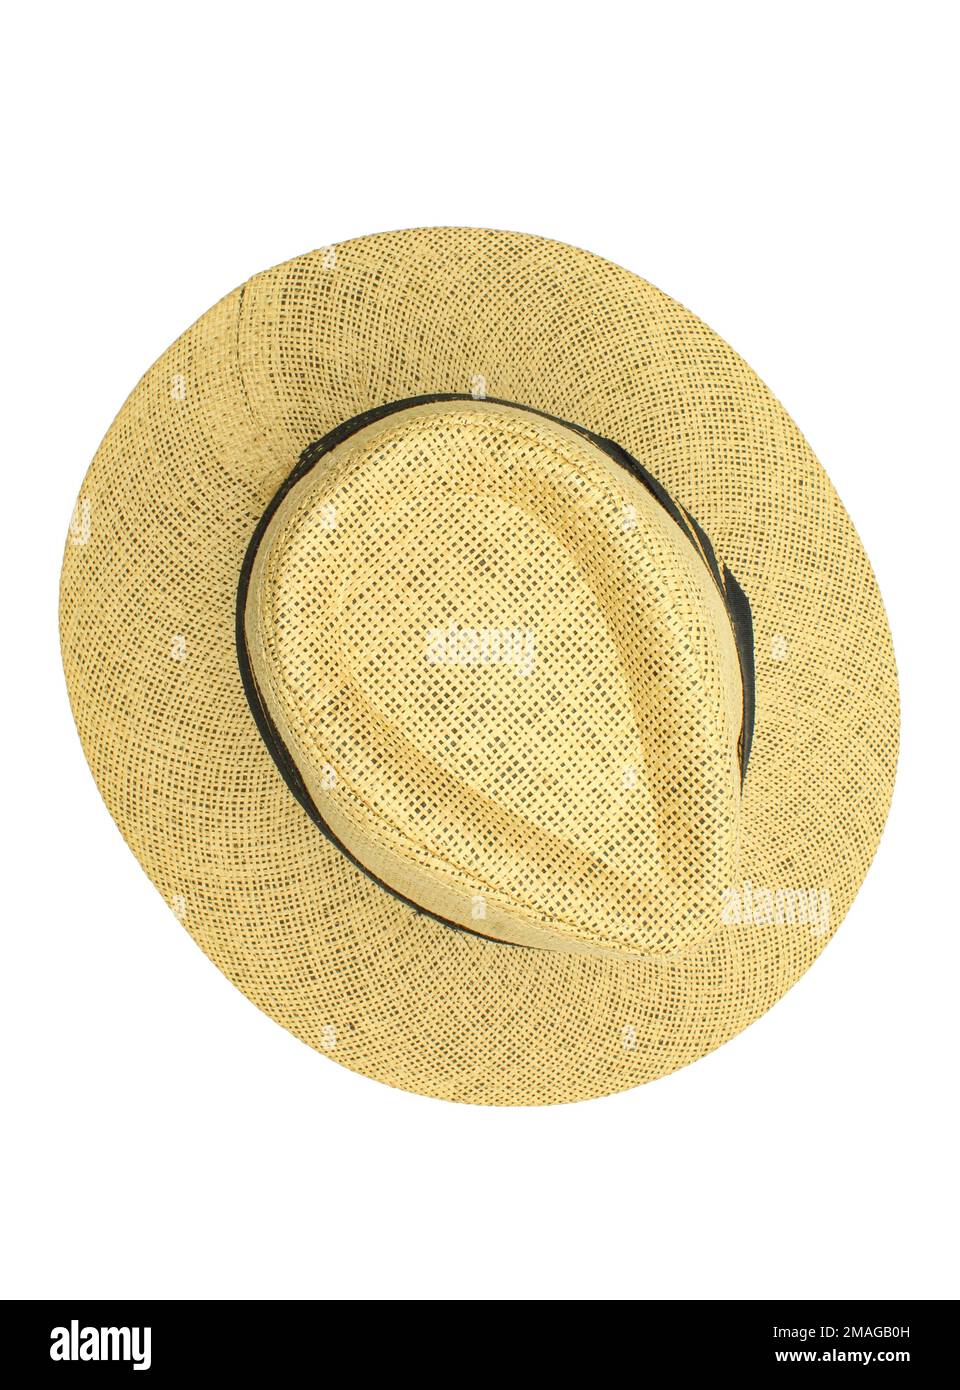 Elegante cappello in paglia per gli uomini sopra isolato su sfondo bianco Foto Stock